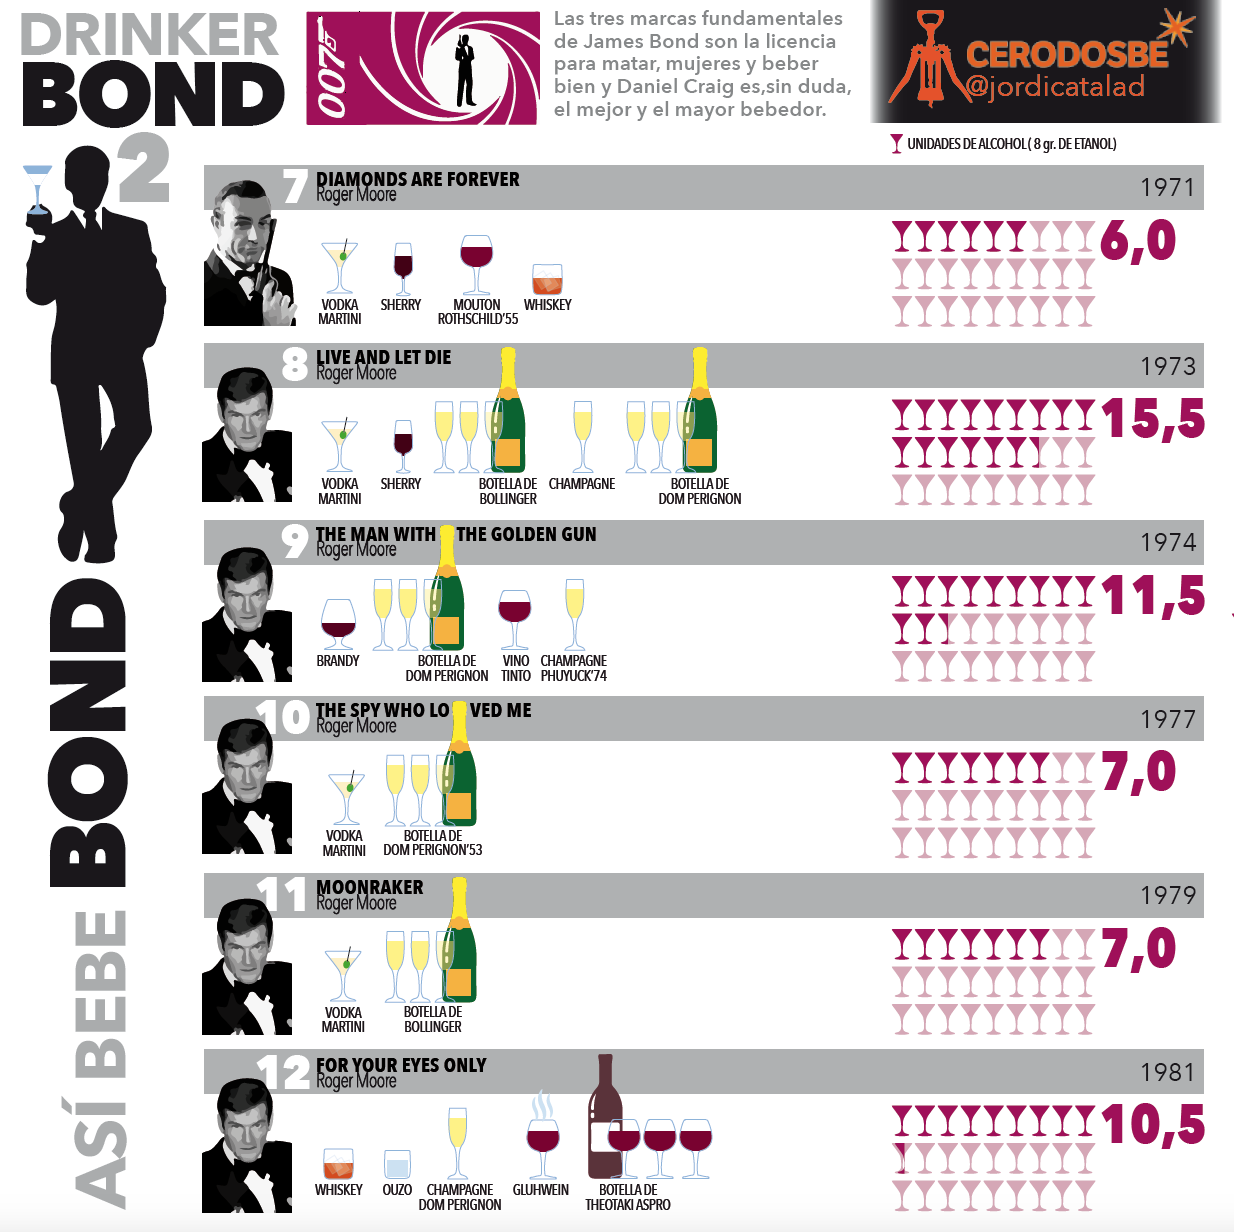 info2 James Bond: con licencia para beber